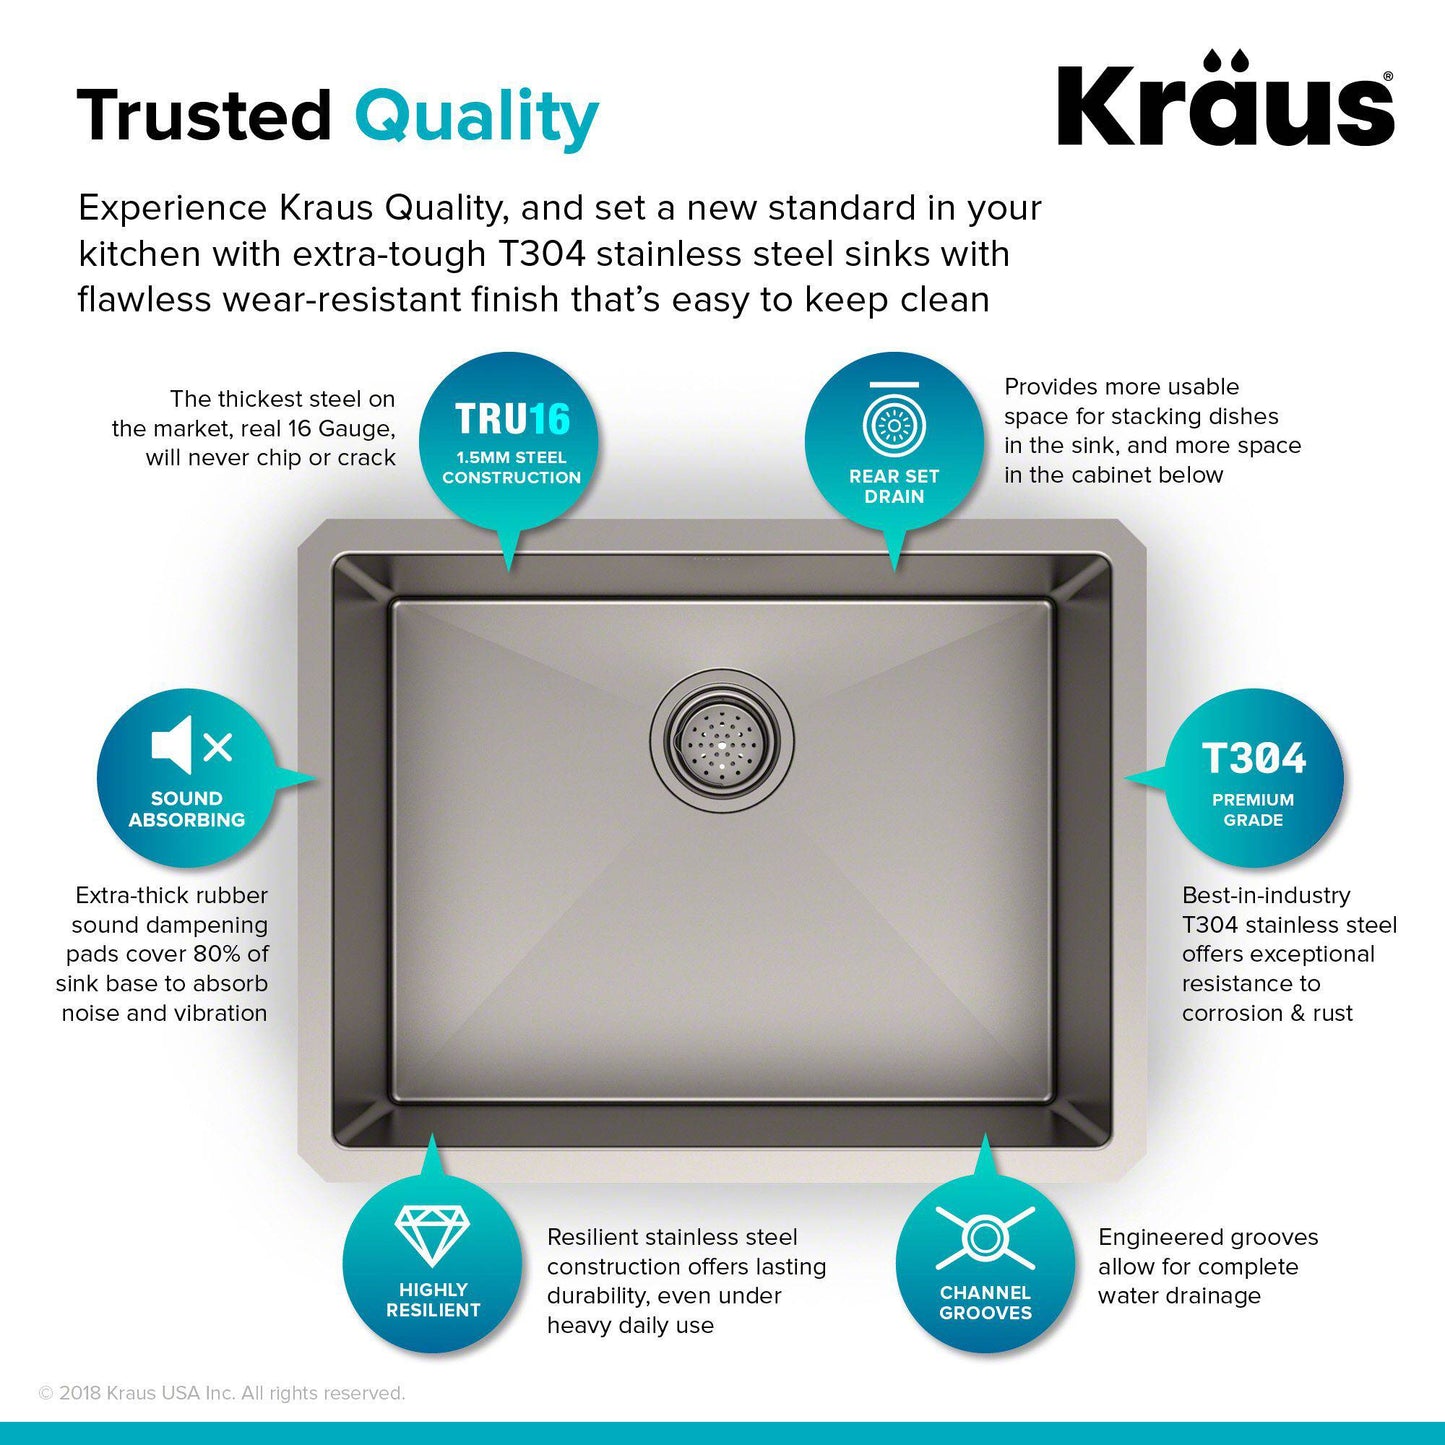 Kraus Standart PRO 23" x 18" Undermount 16 Gauge Stainless Steel Single Bowl Kitchen Sink